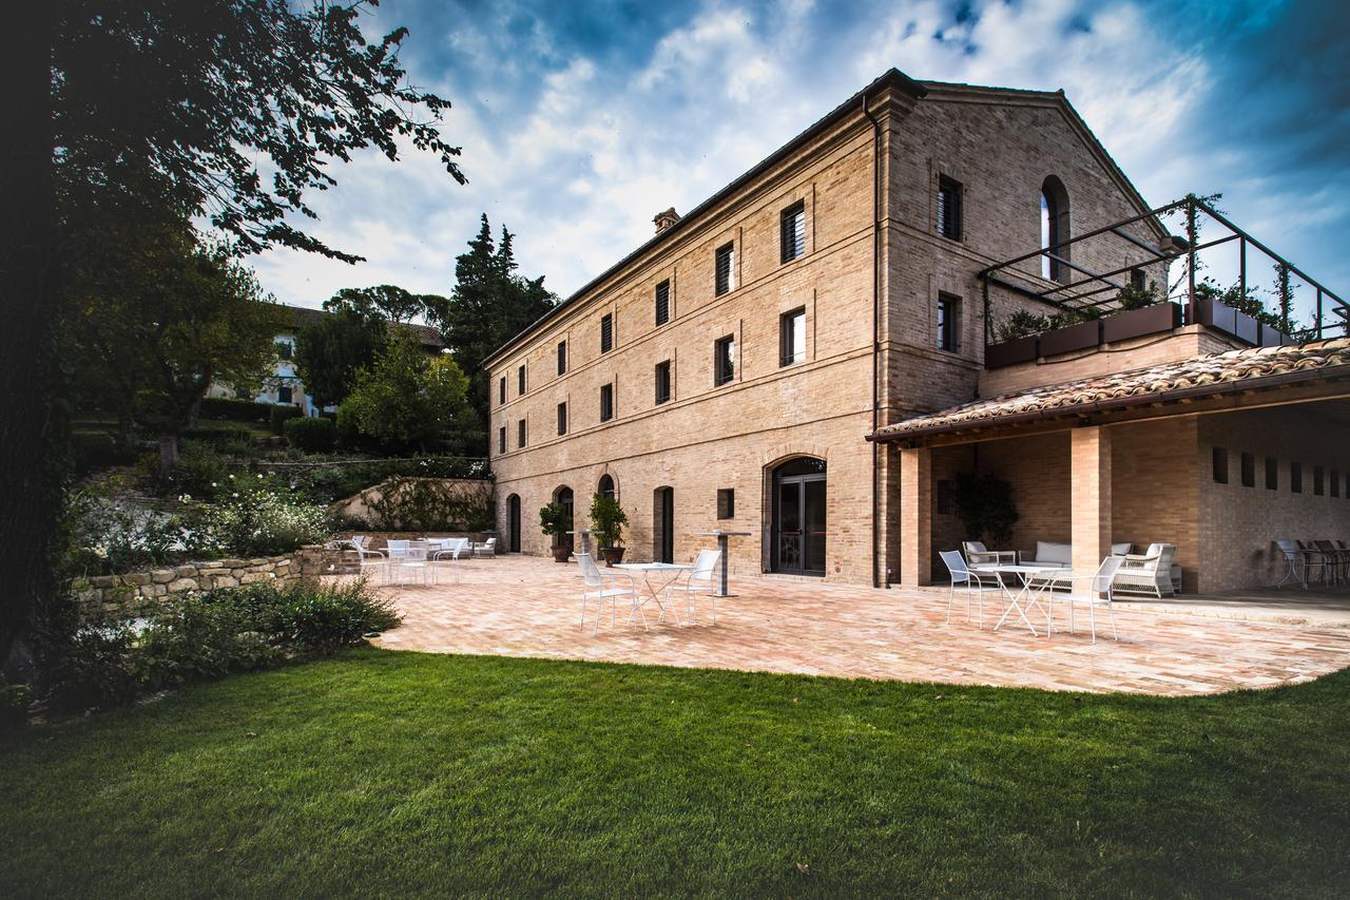 Villa Anitori Relais & Spa Loro Piceno, Marche - Italy